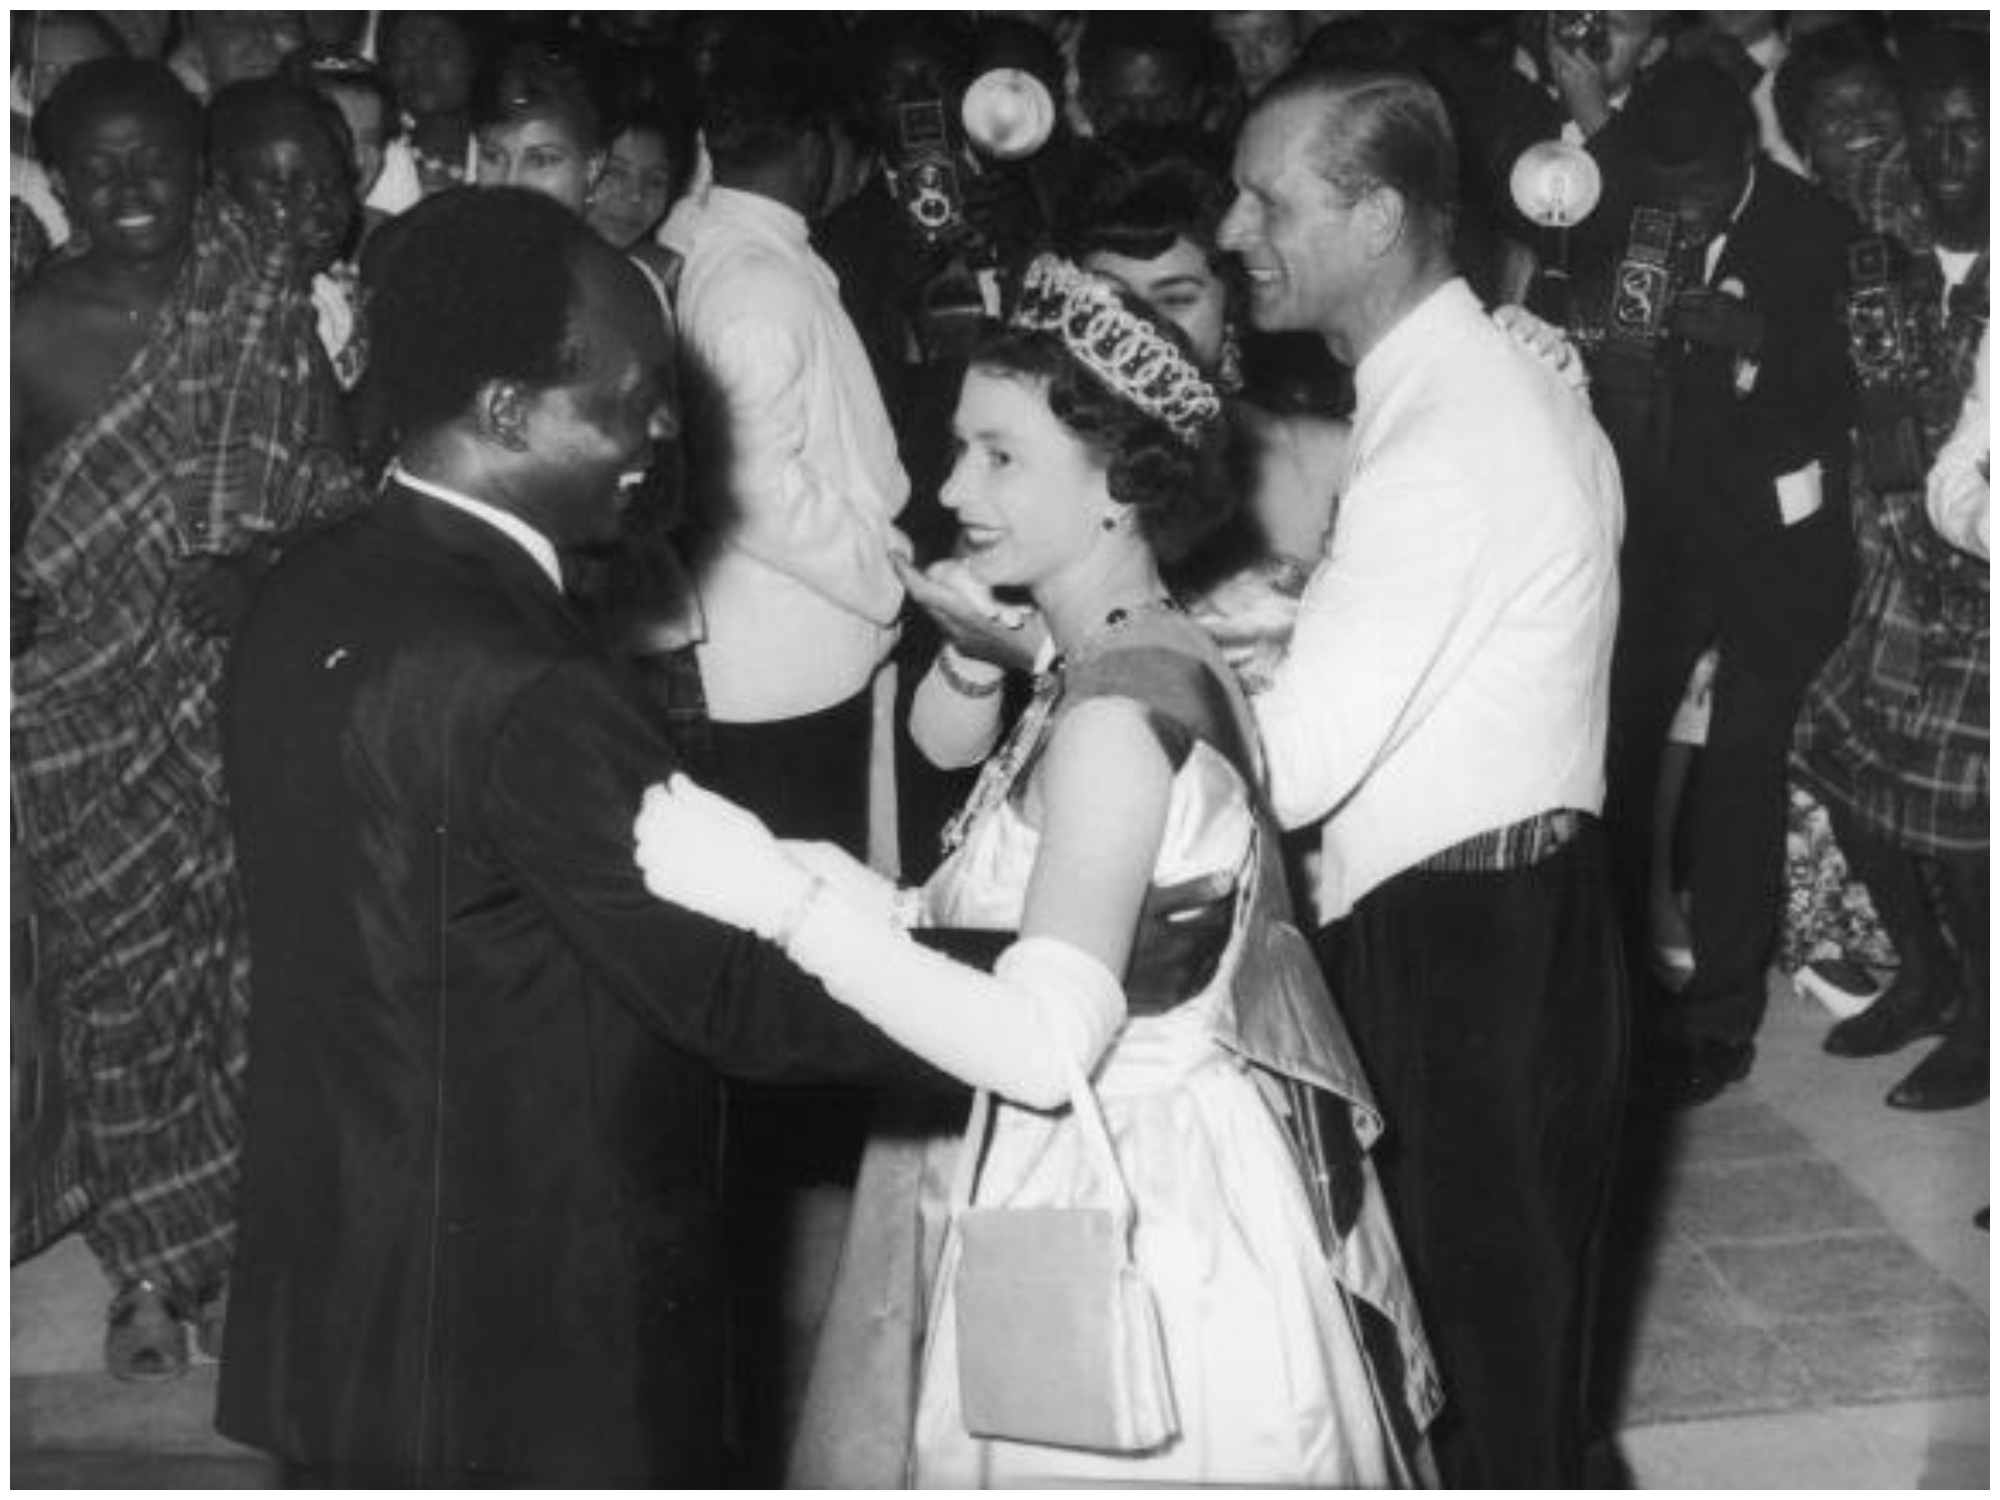 Nkrumah and Queen Elizabeth II dance